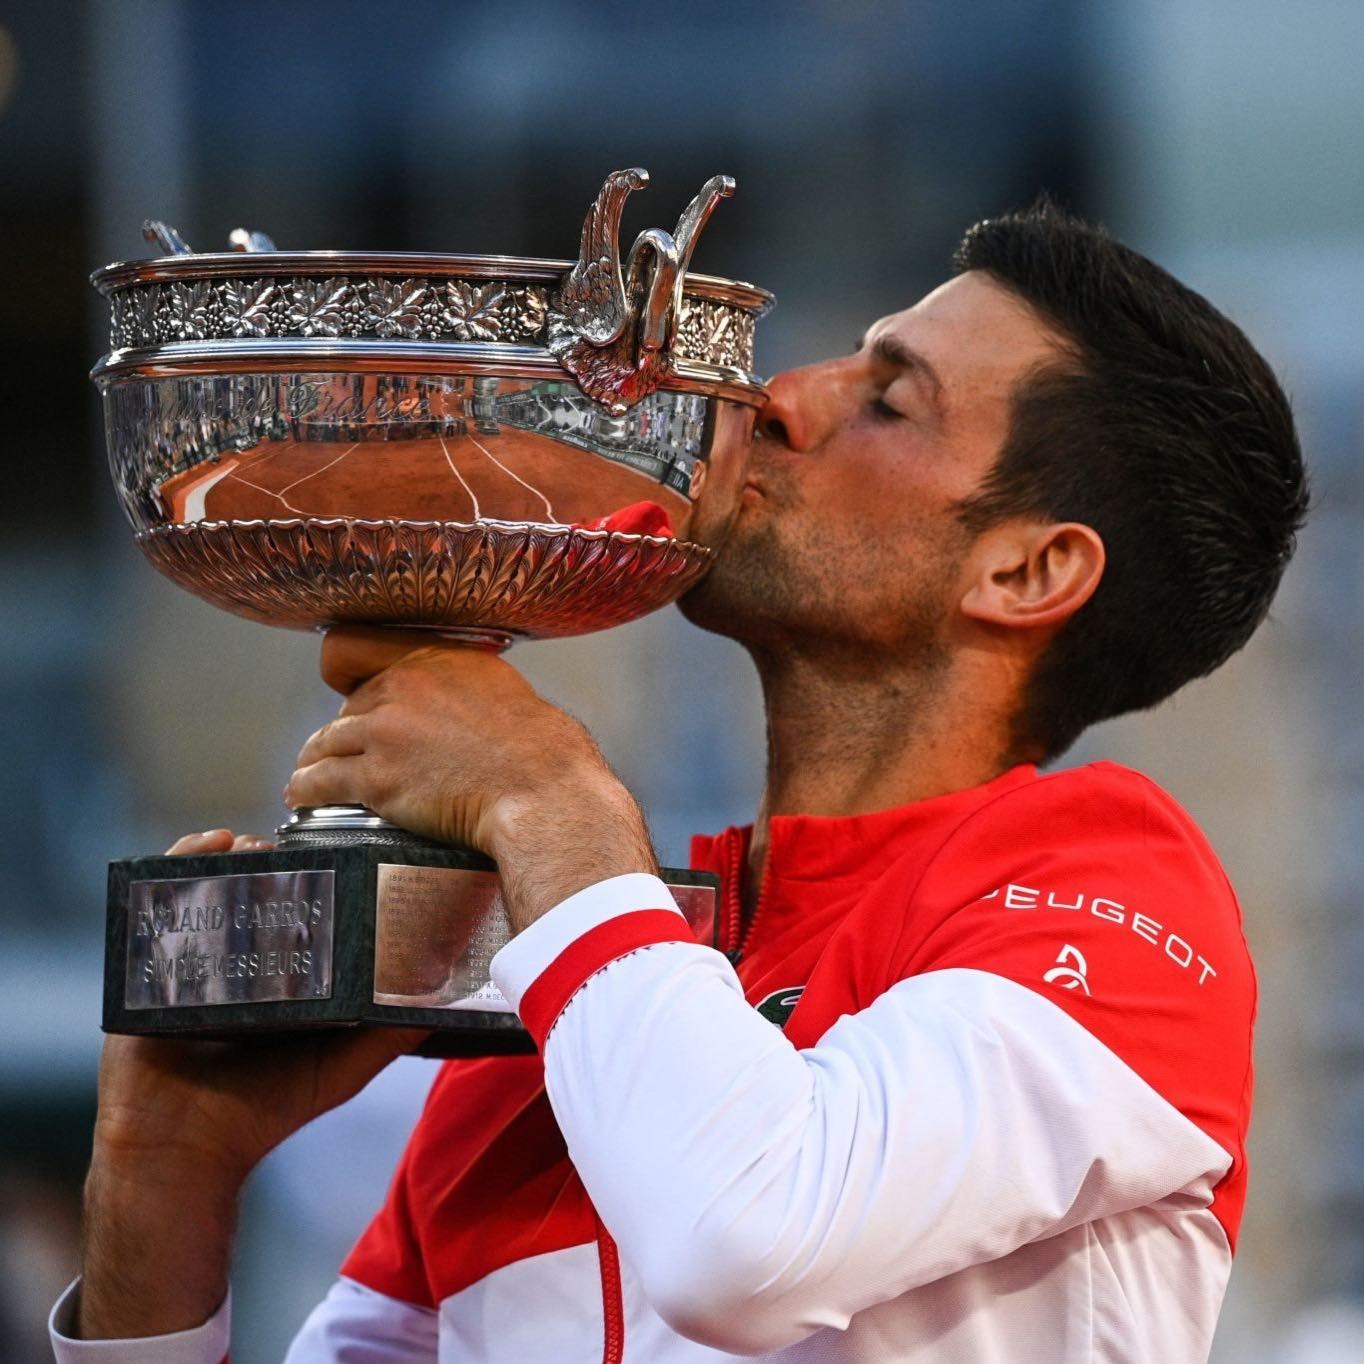 Gest superb făcut de Novak Djokovici după ce a câștigat finala de la Roland Garros